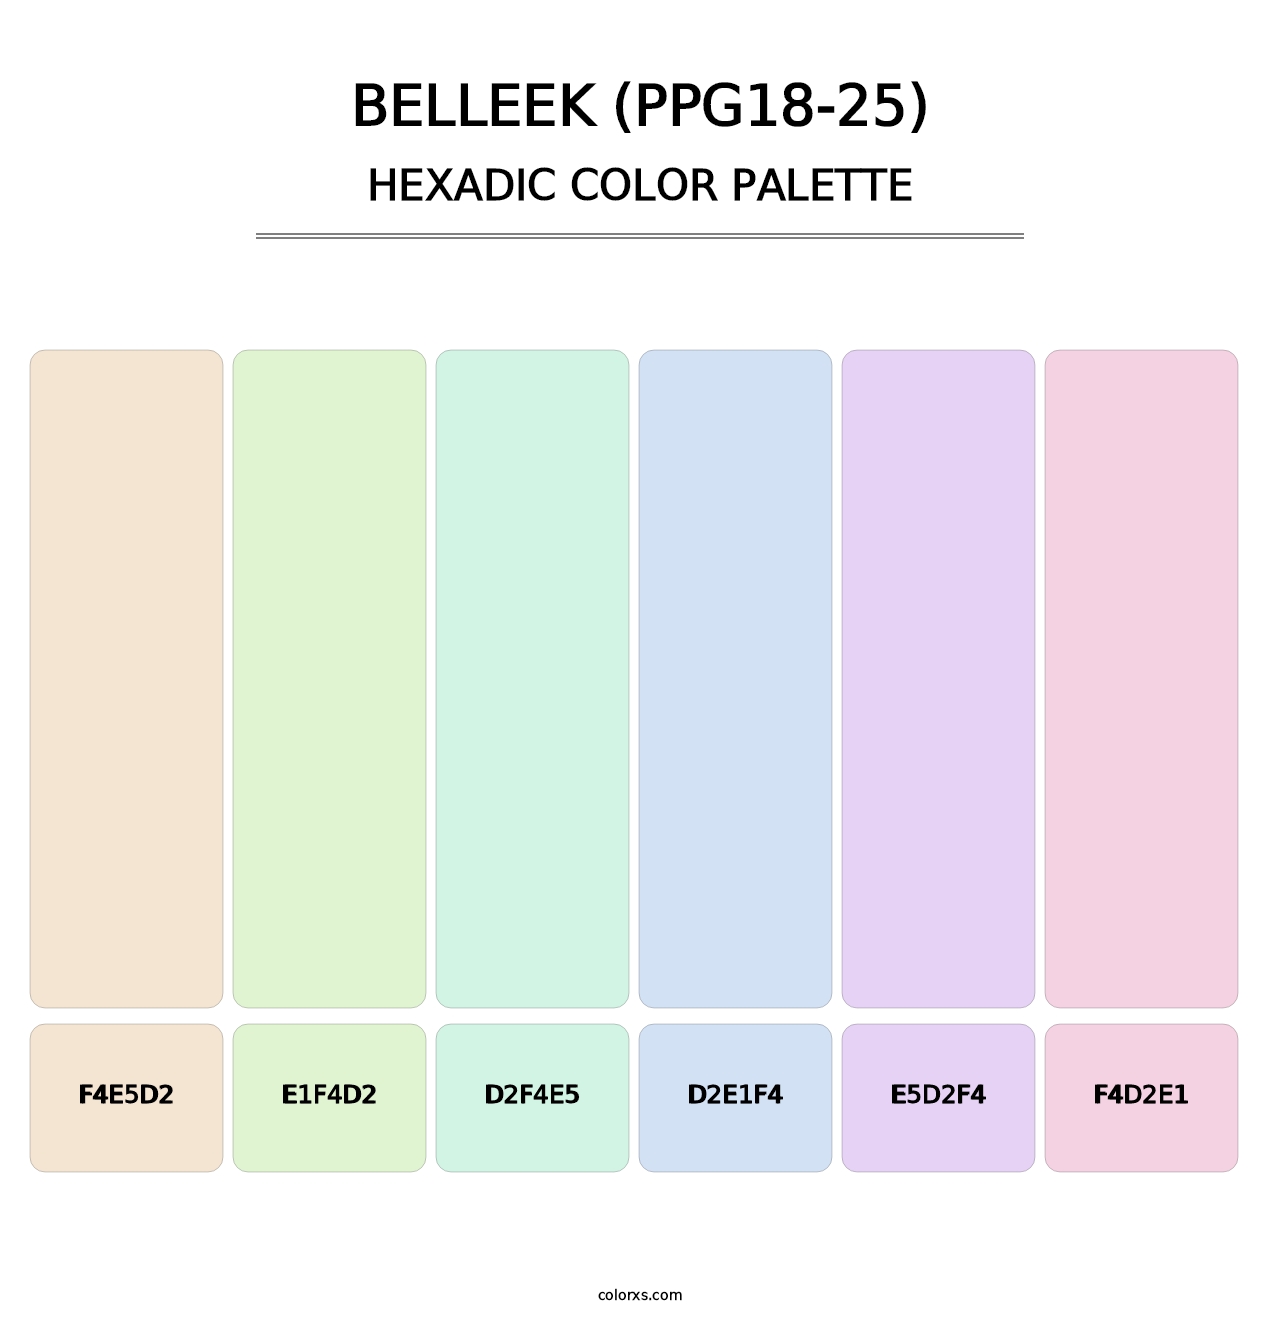 Belleek (PPG18-25) - Hexadic Color Palette